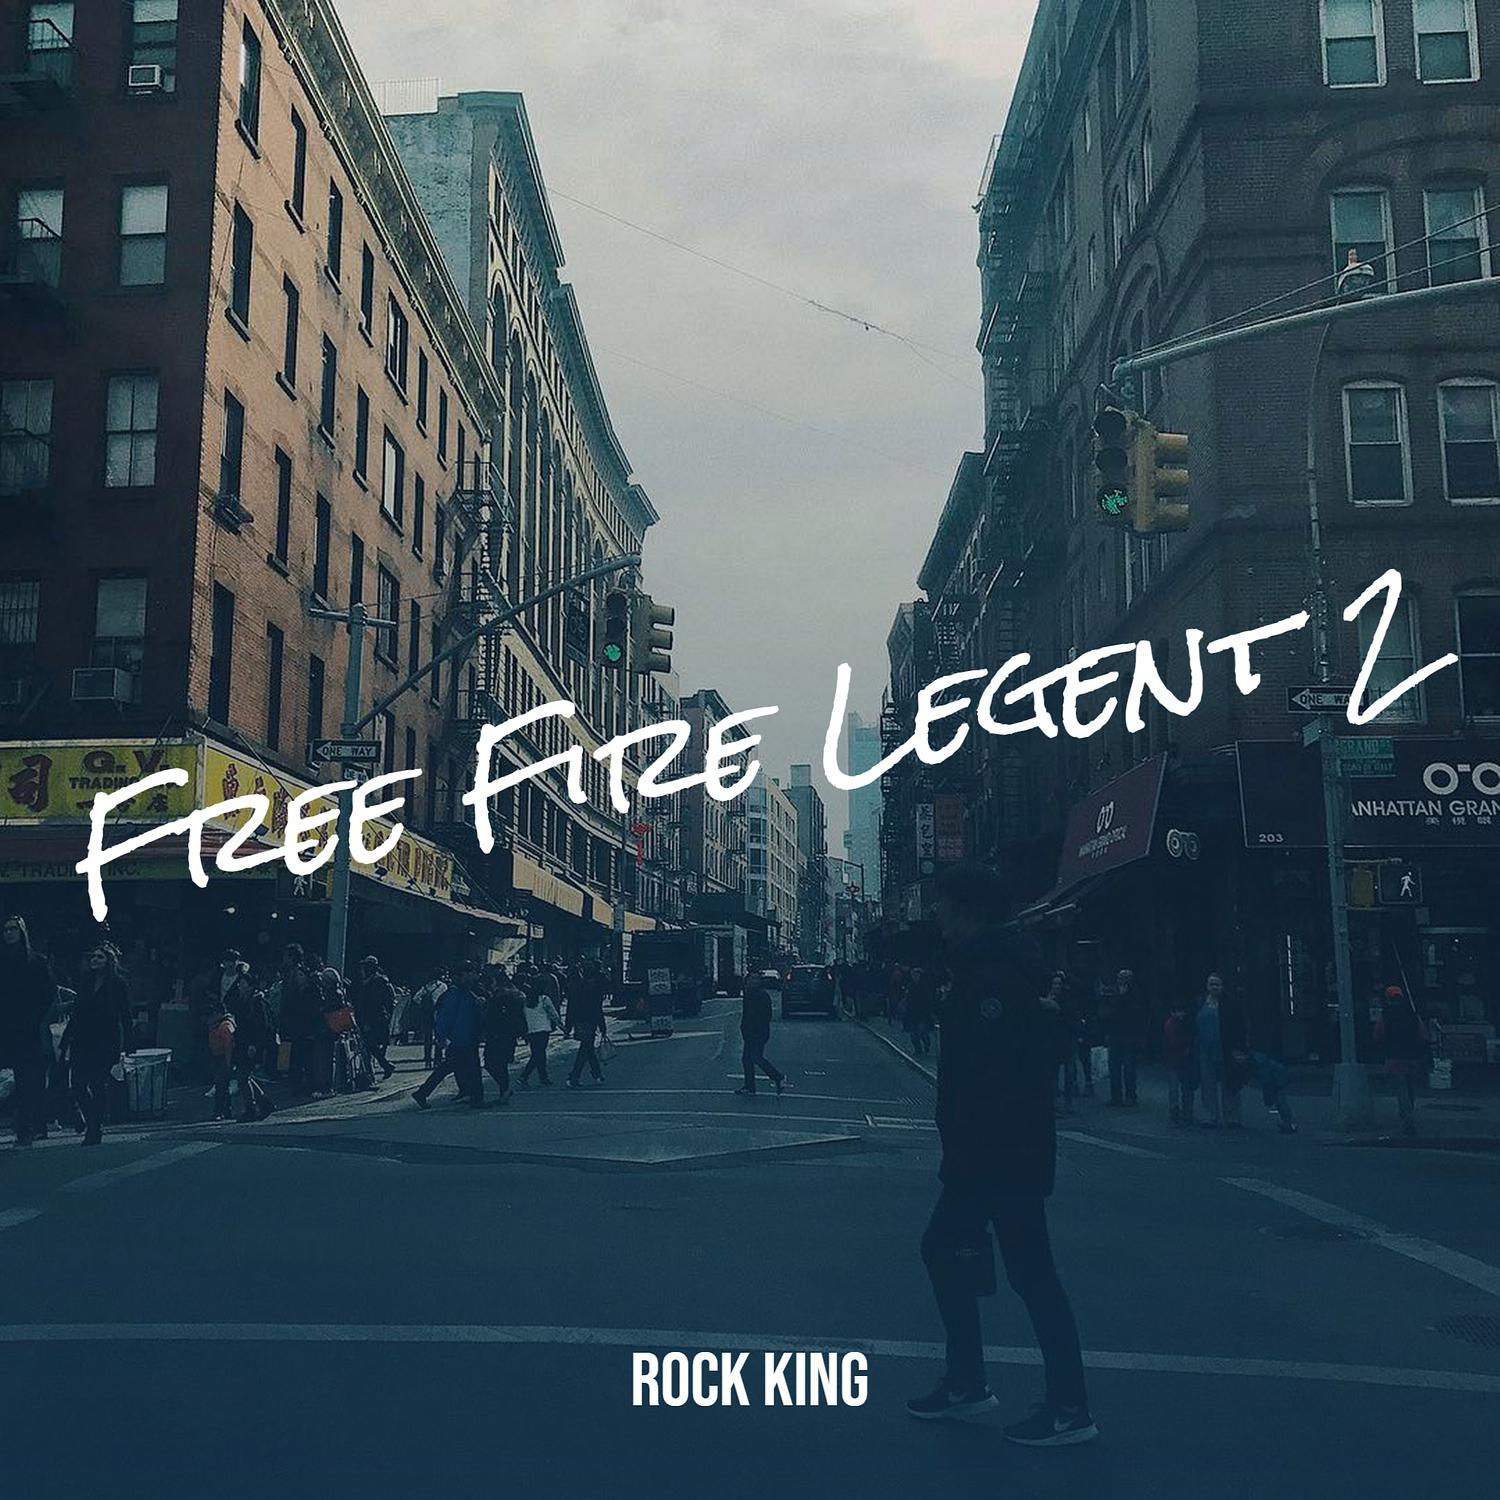 Rock King - Free Fire Legent 2